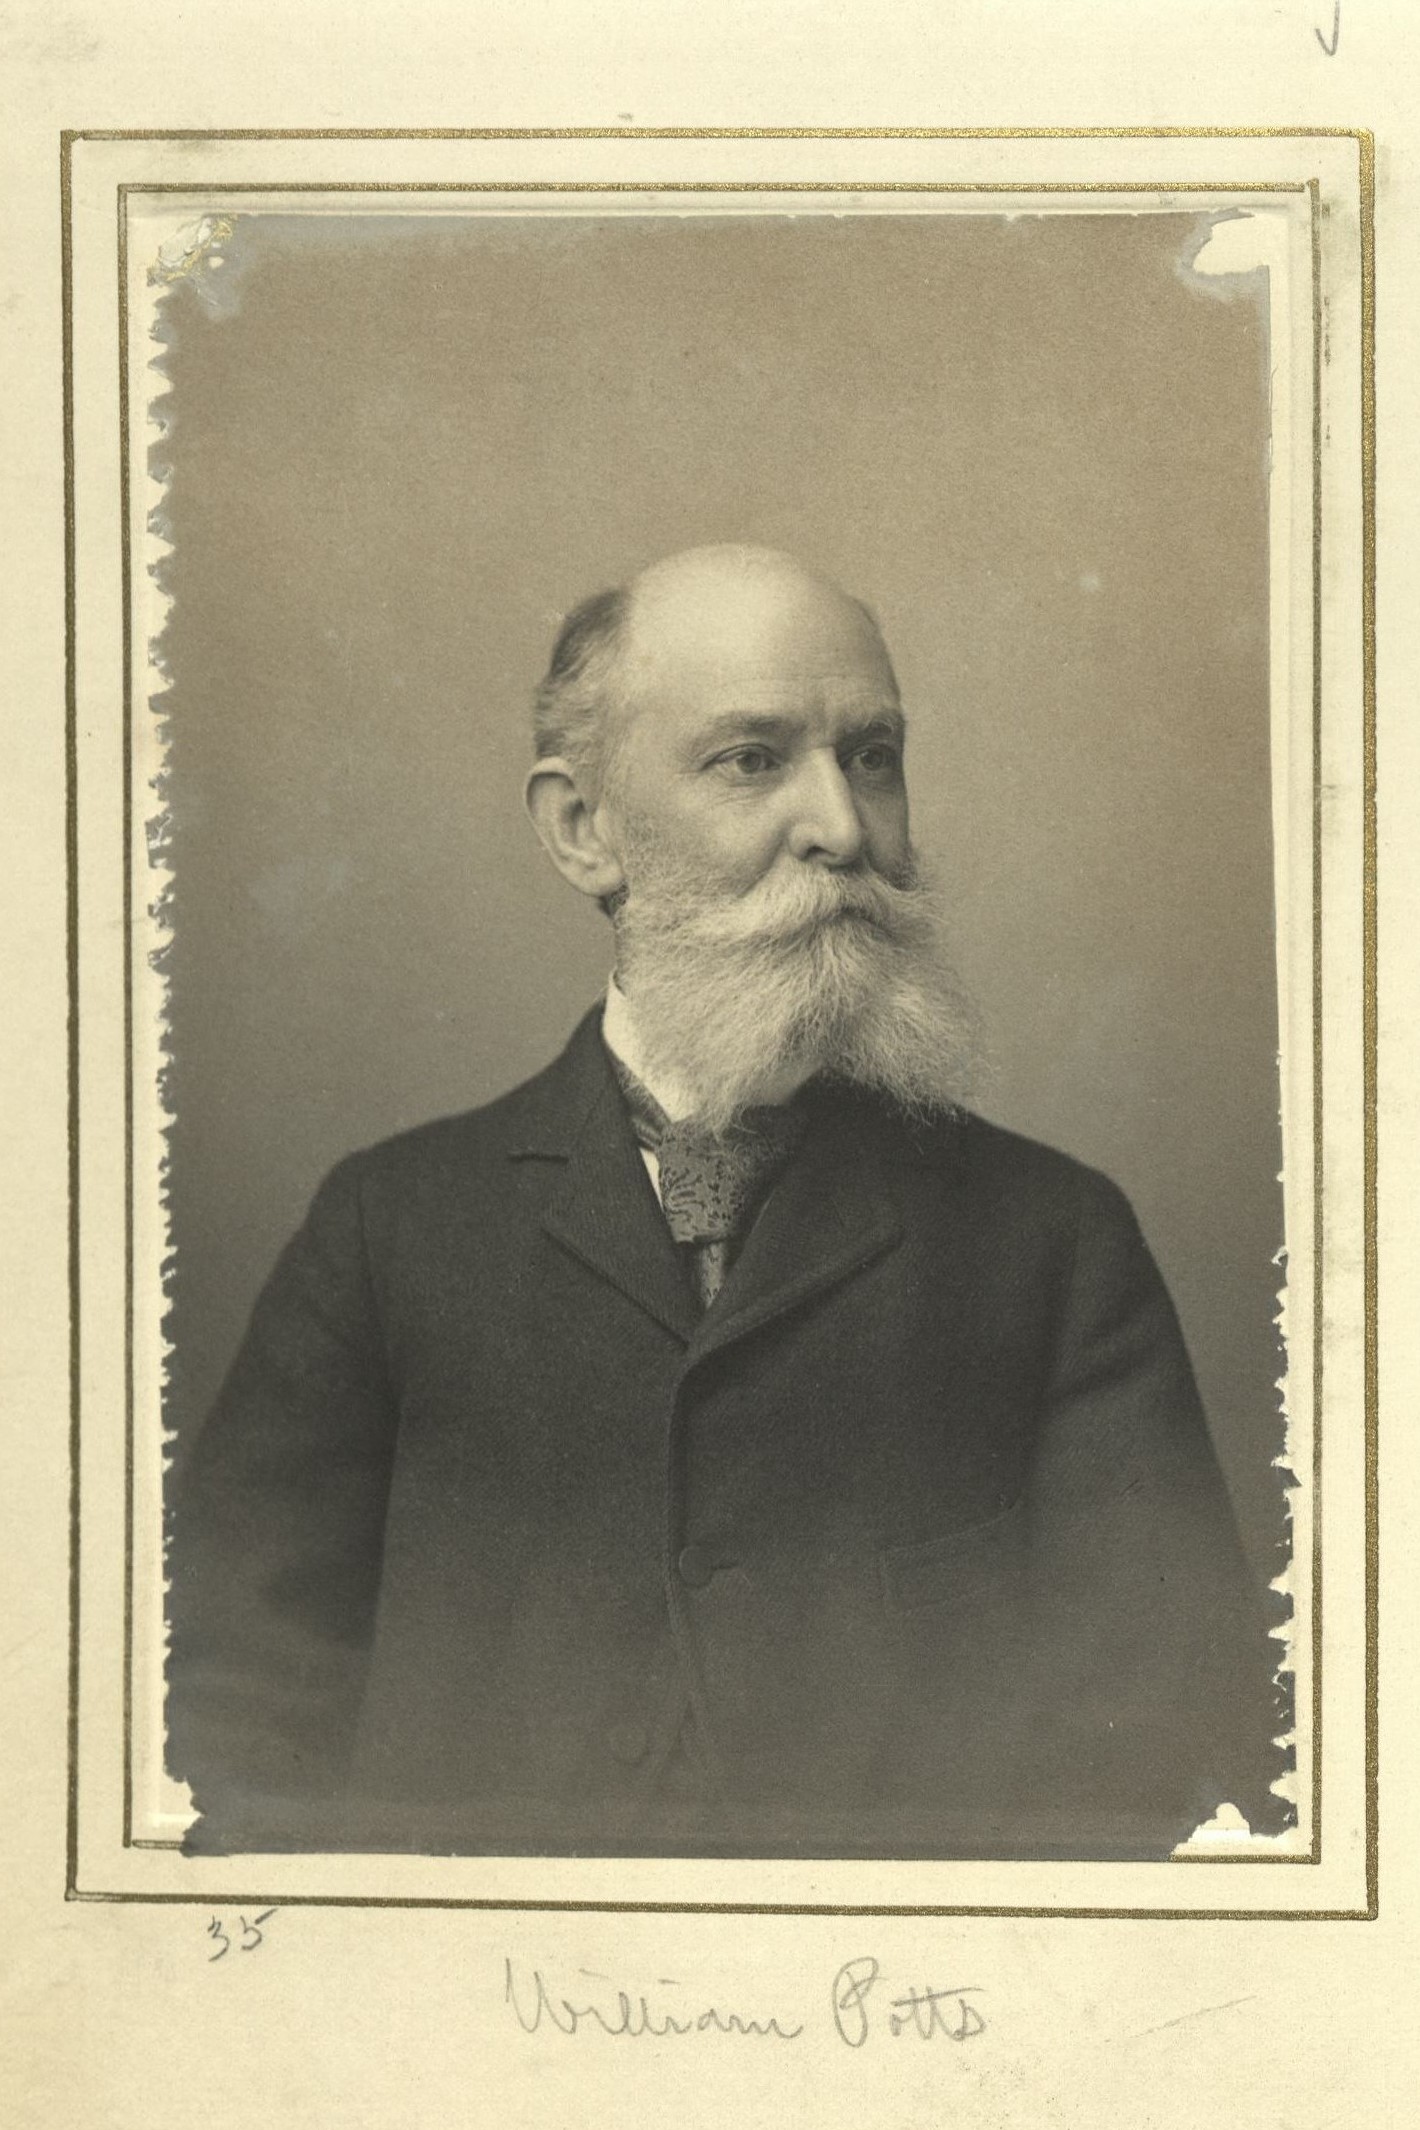 Member portrait of William Potts